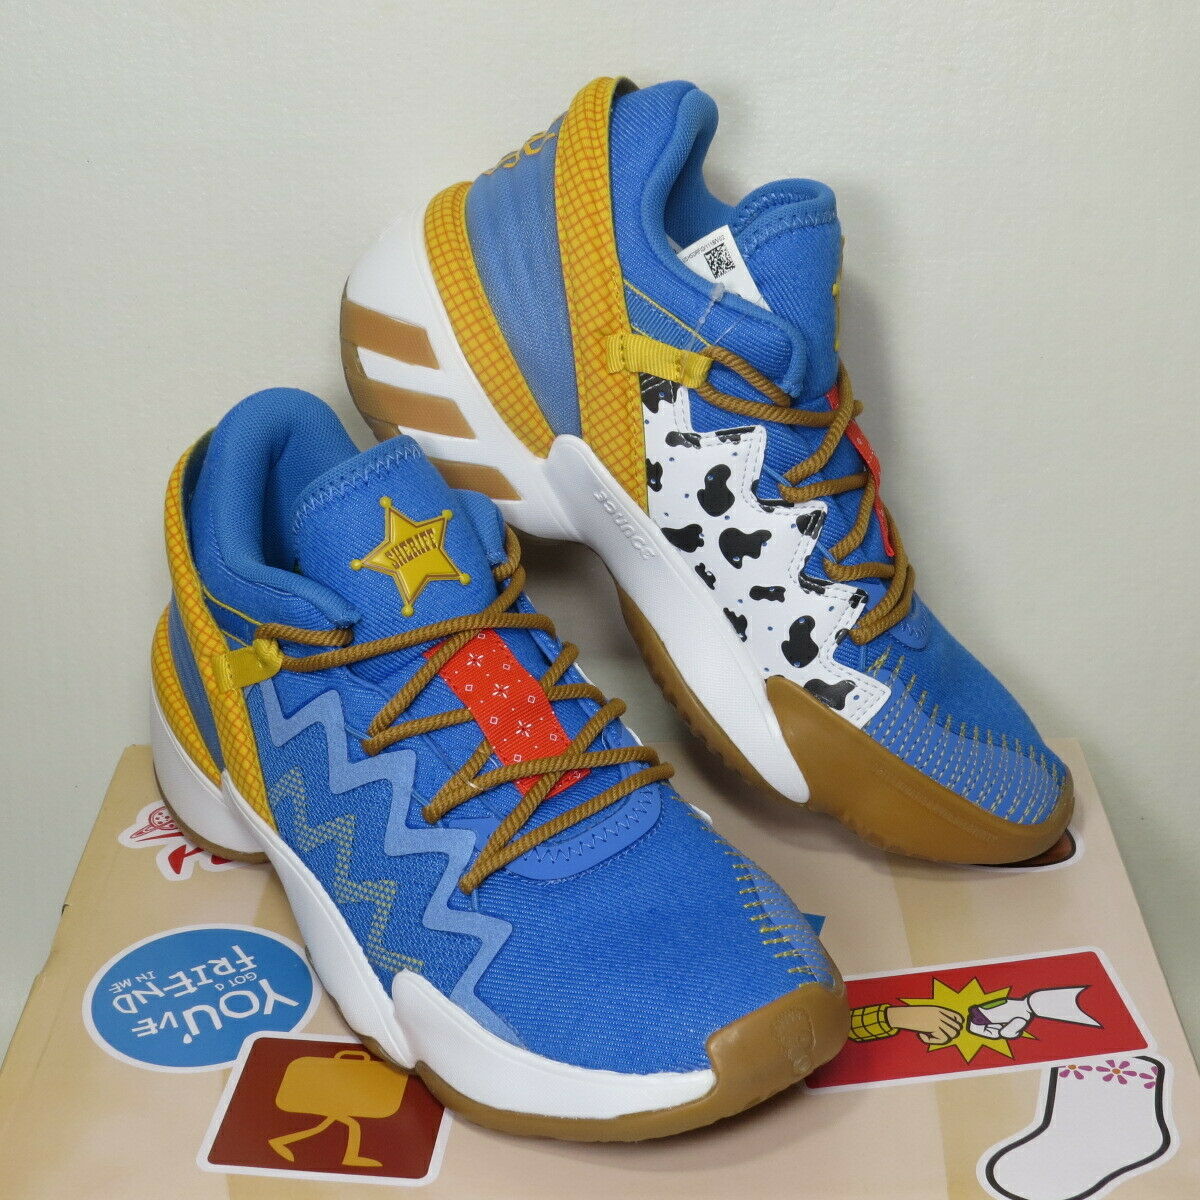 adidas Toy Story x D.O.N. Issue 2 J Woody Basketball Shoes FX1595 Size 5Y NIB